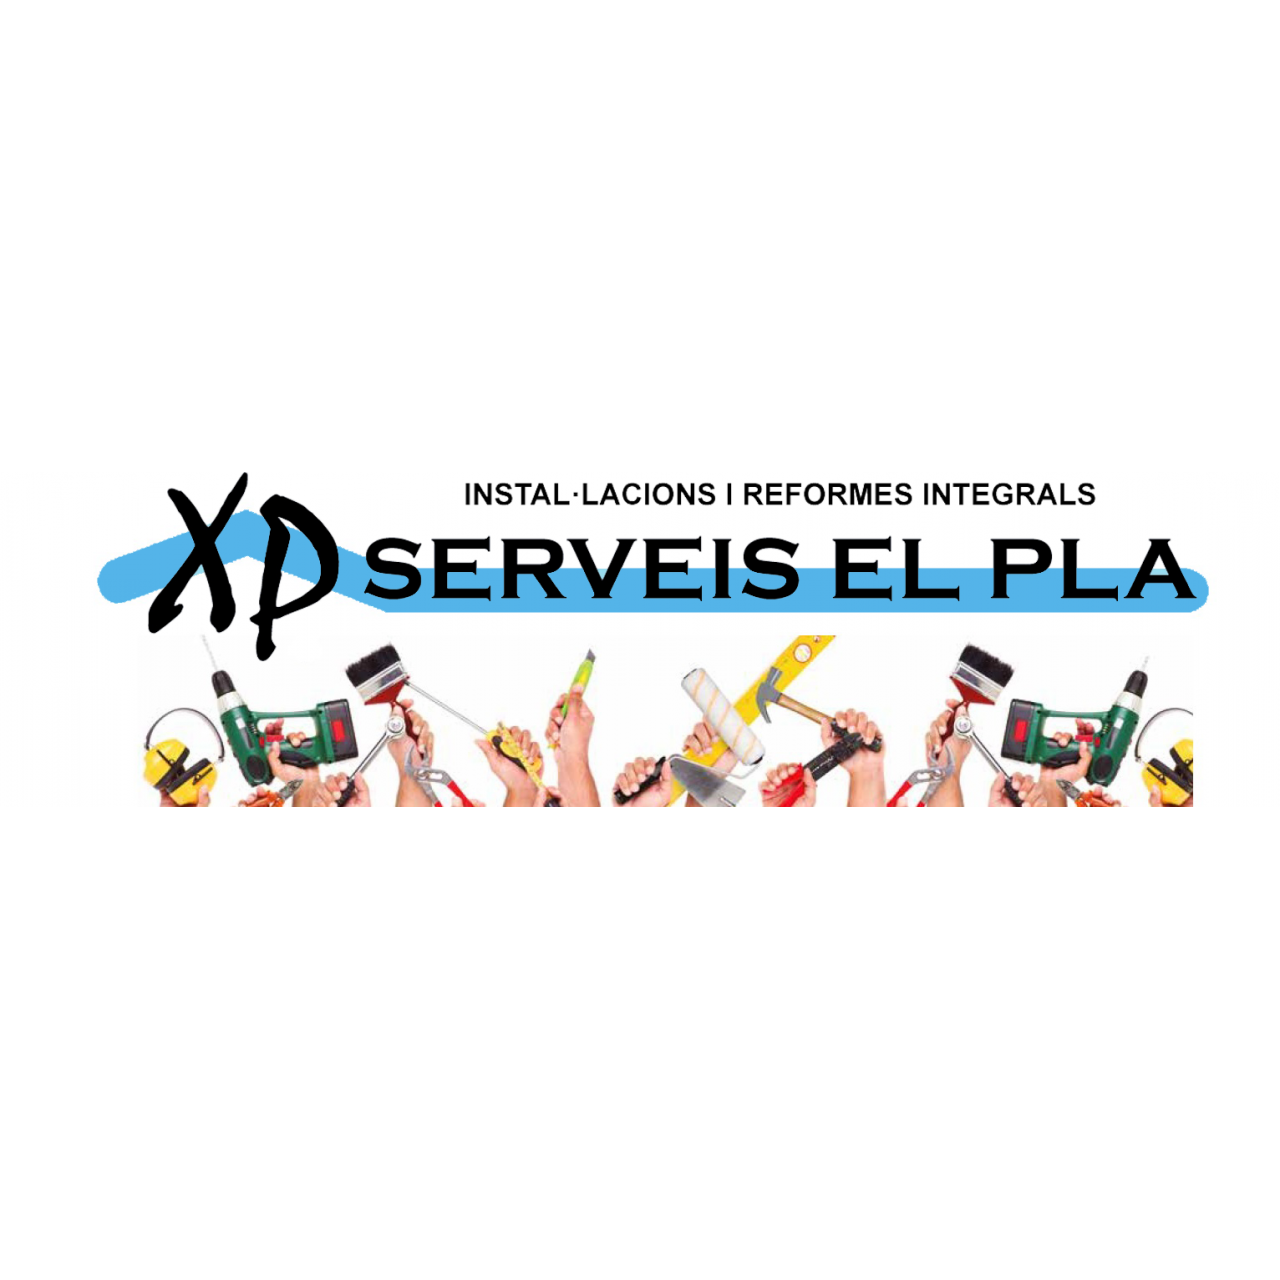 Xp Serveis El Pla Logo